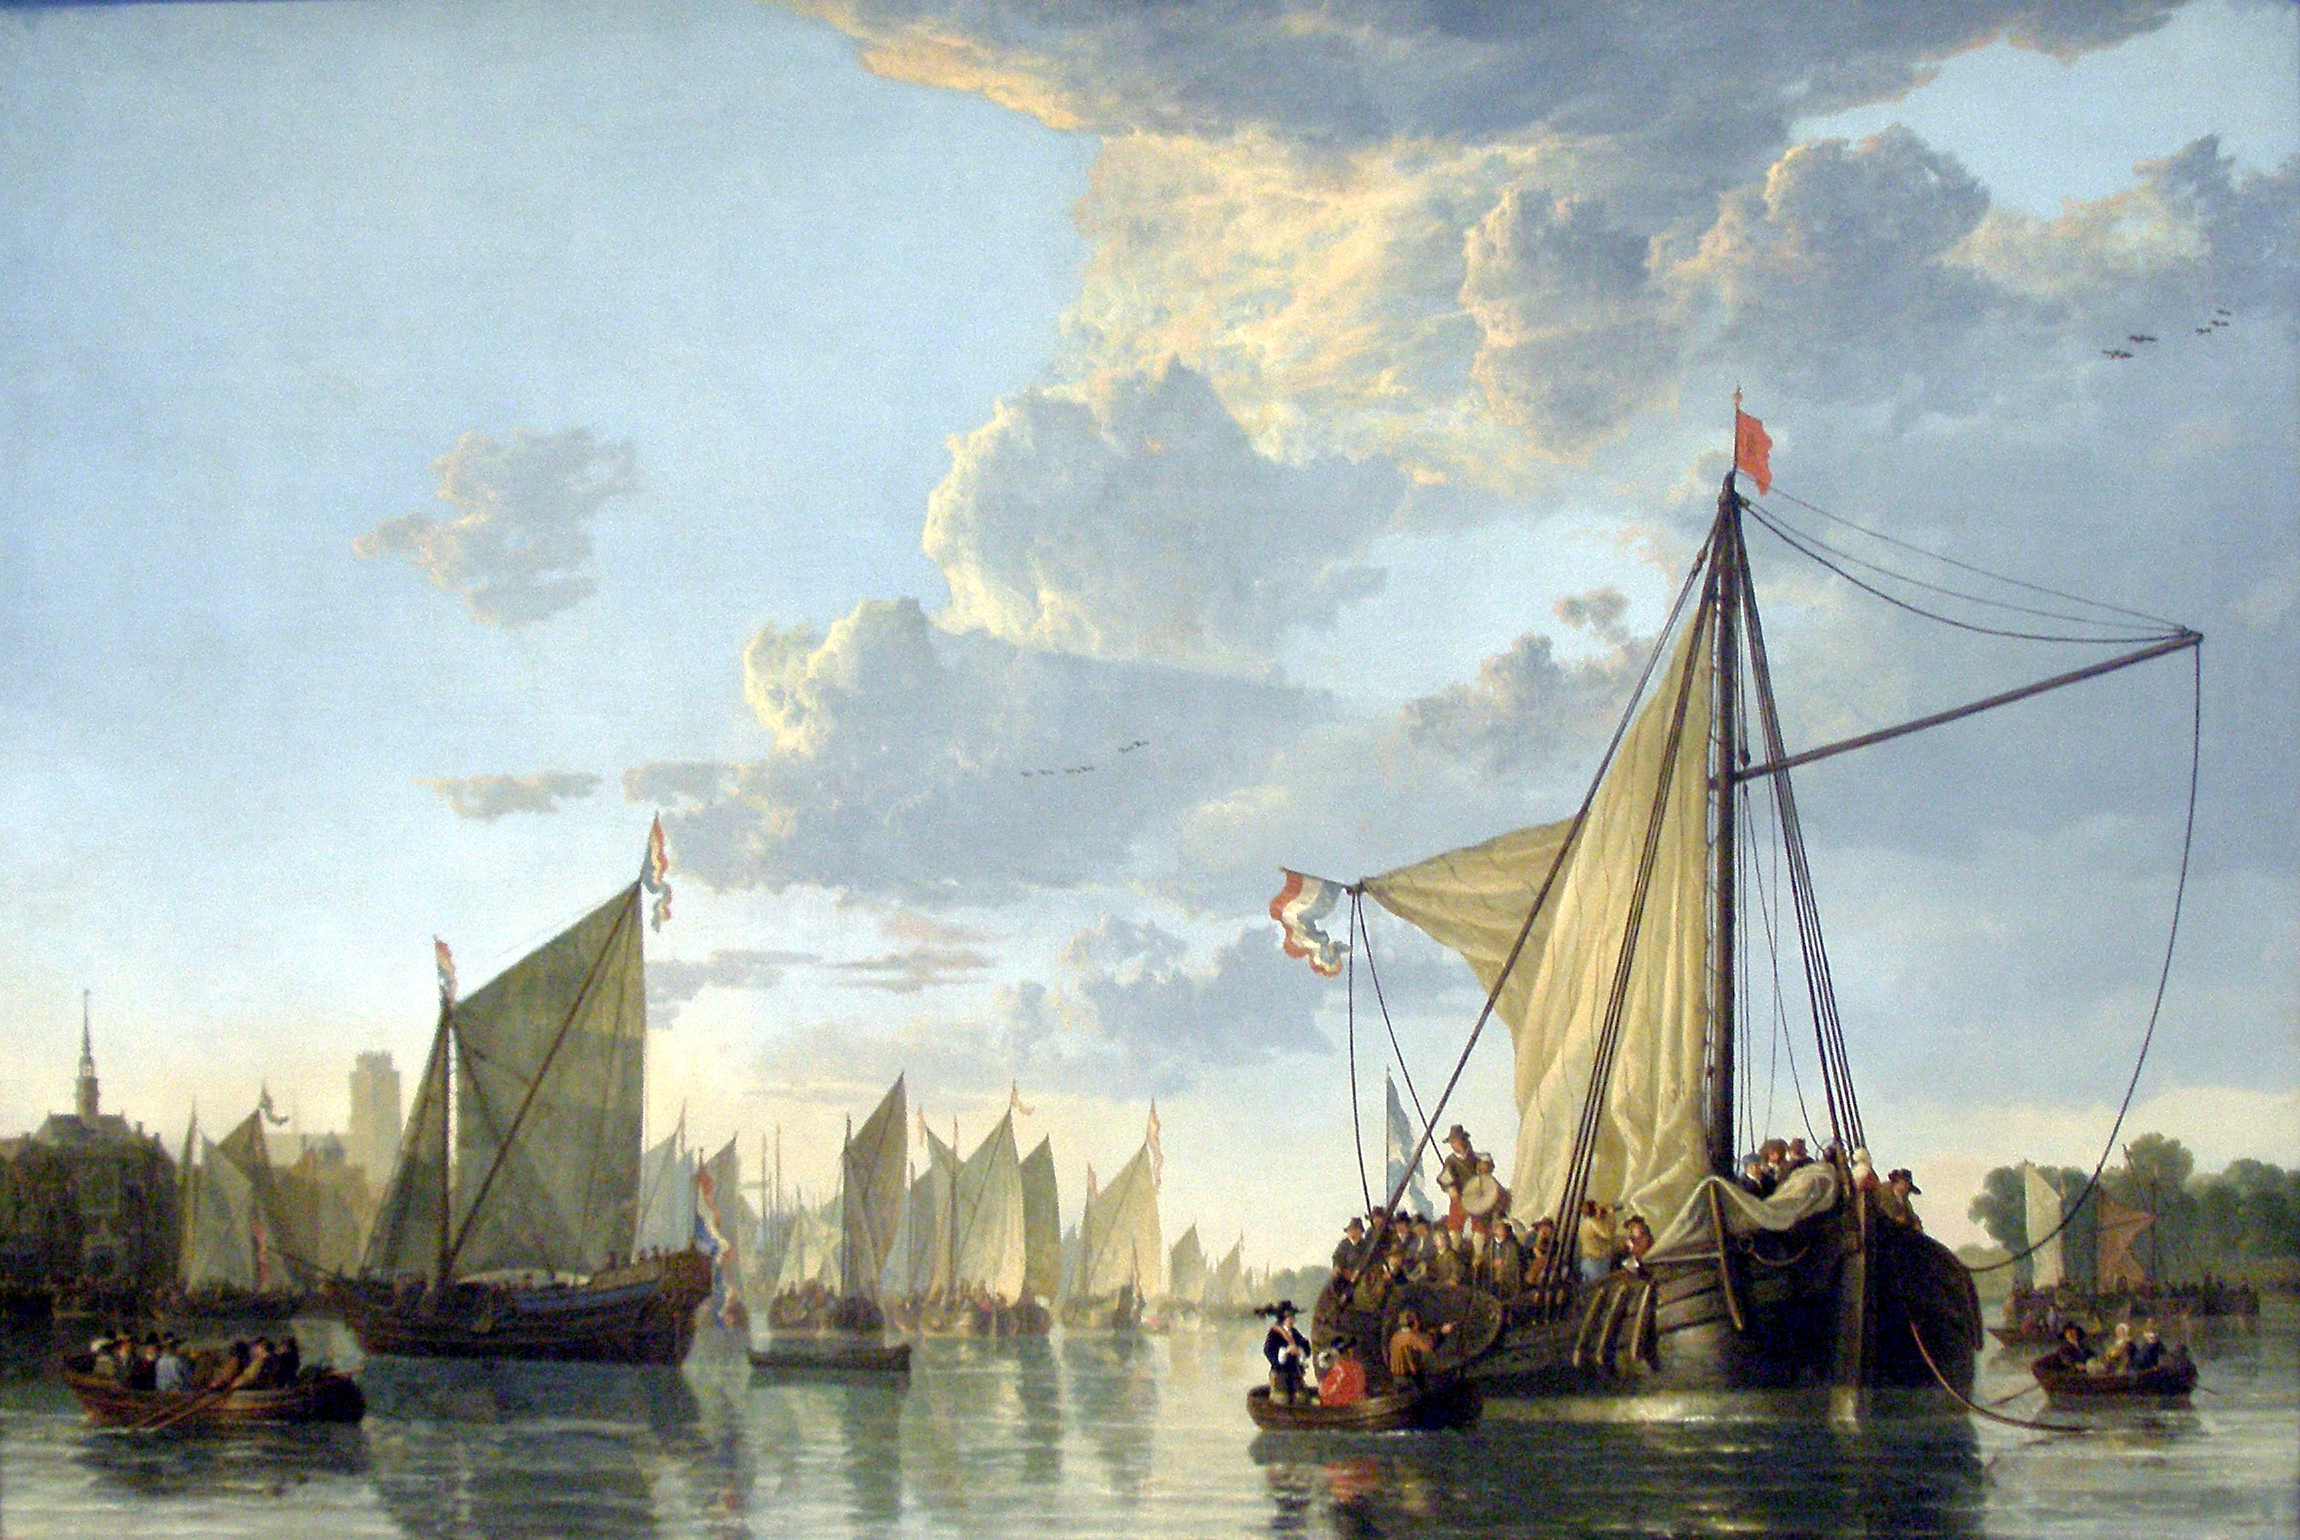 Die Maas bei Dordrecht by Aelbert Cuyp - ca. 1650 -  114.9 x 170.2 cm National Gallery of Art